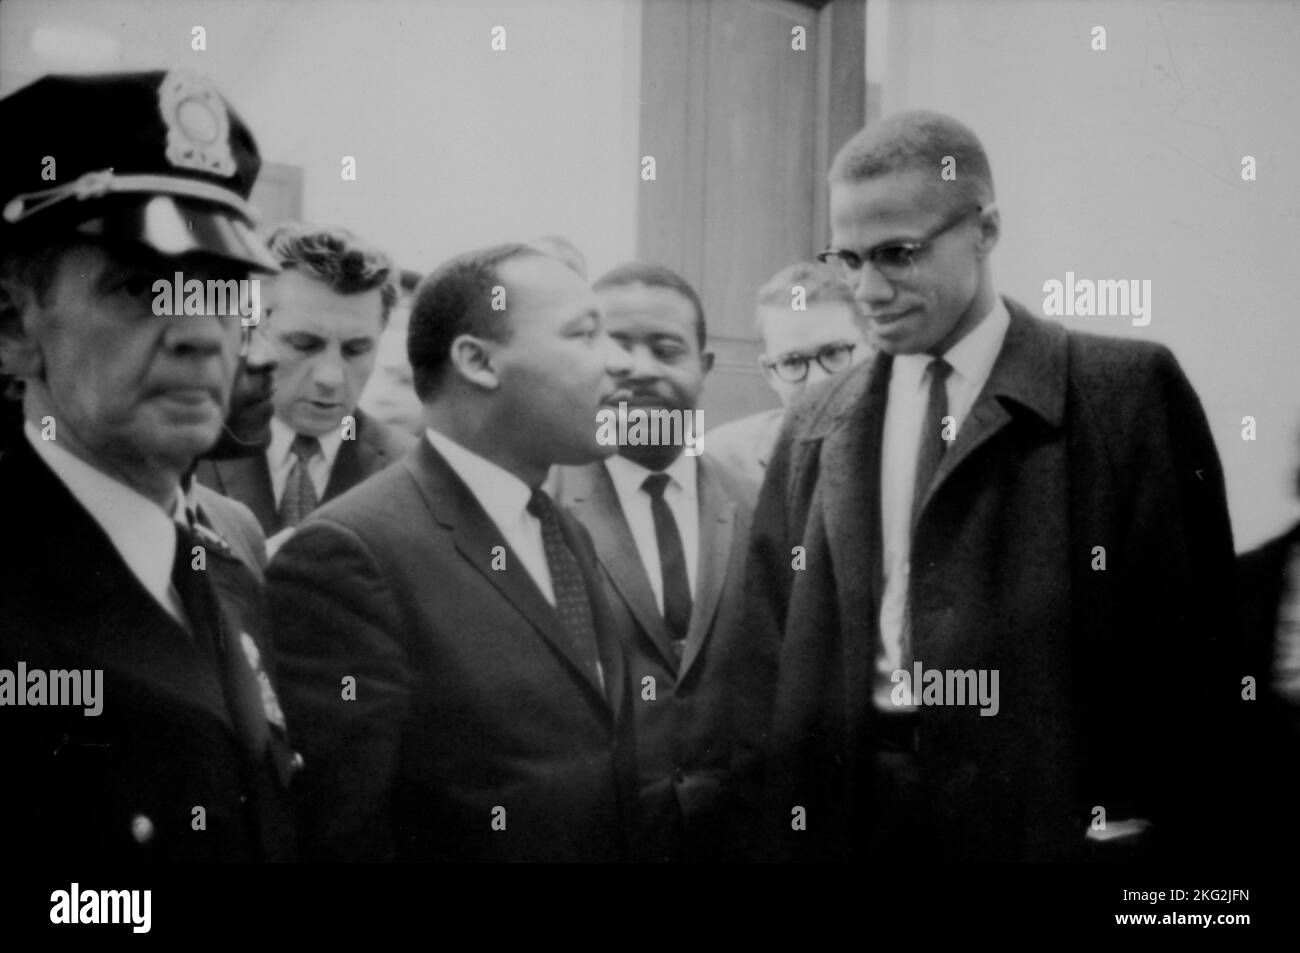 USA - 26. März 1964 - die Bürgerrechtler Martin Luther King und Malcolm X warten auf den Beginn einer Pressekonferenz - Foto: Geopix/Marion Trikosko Stockfoto